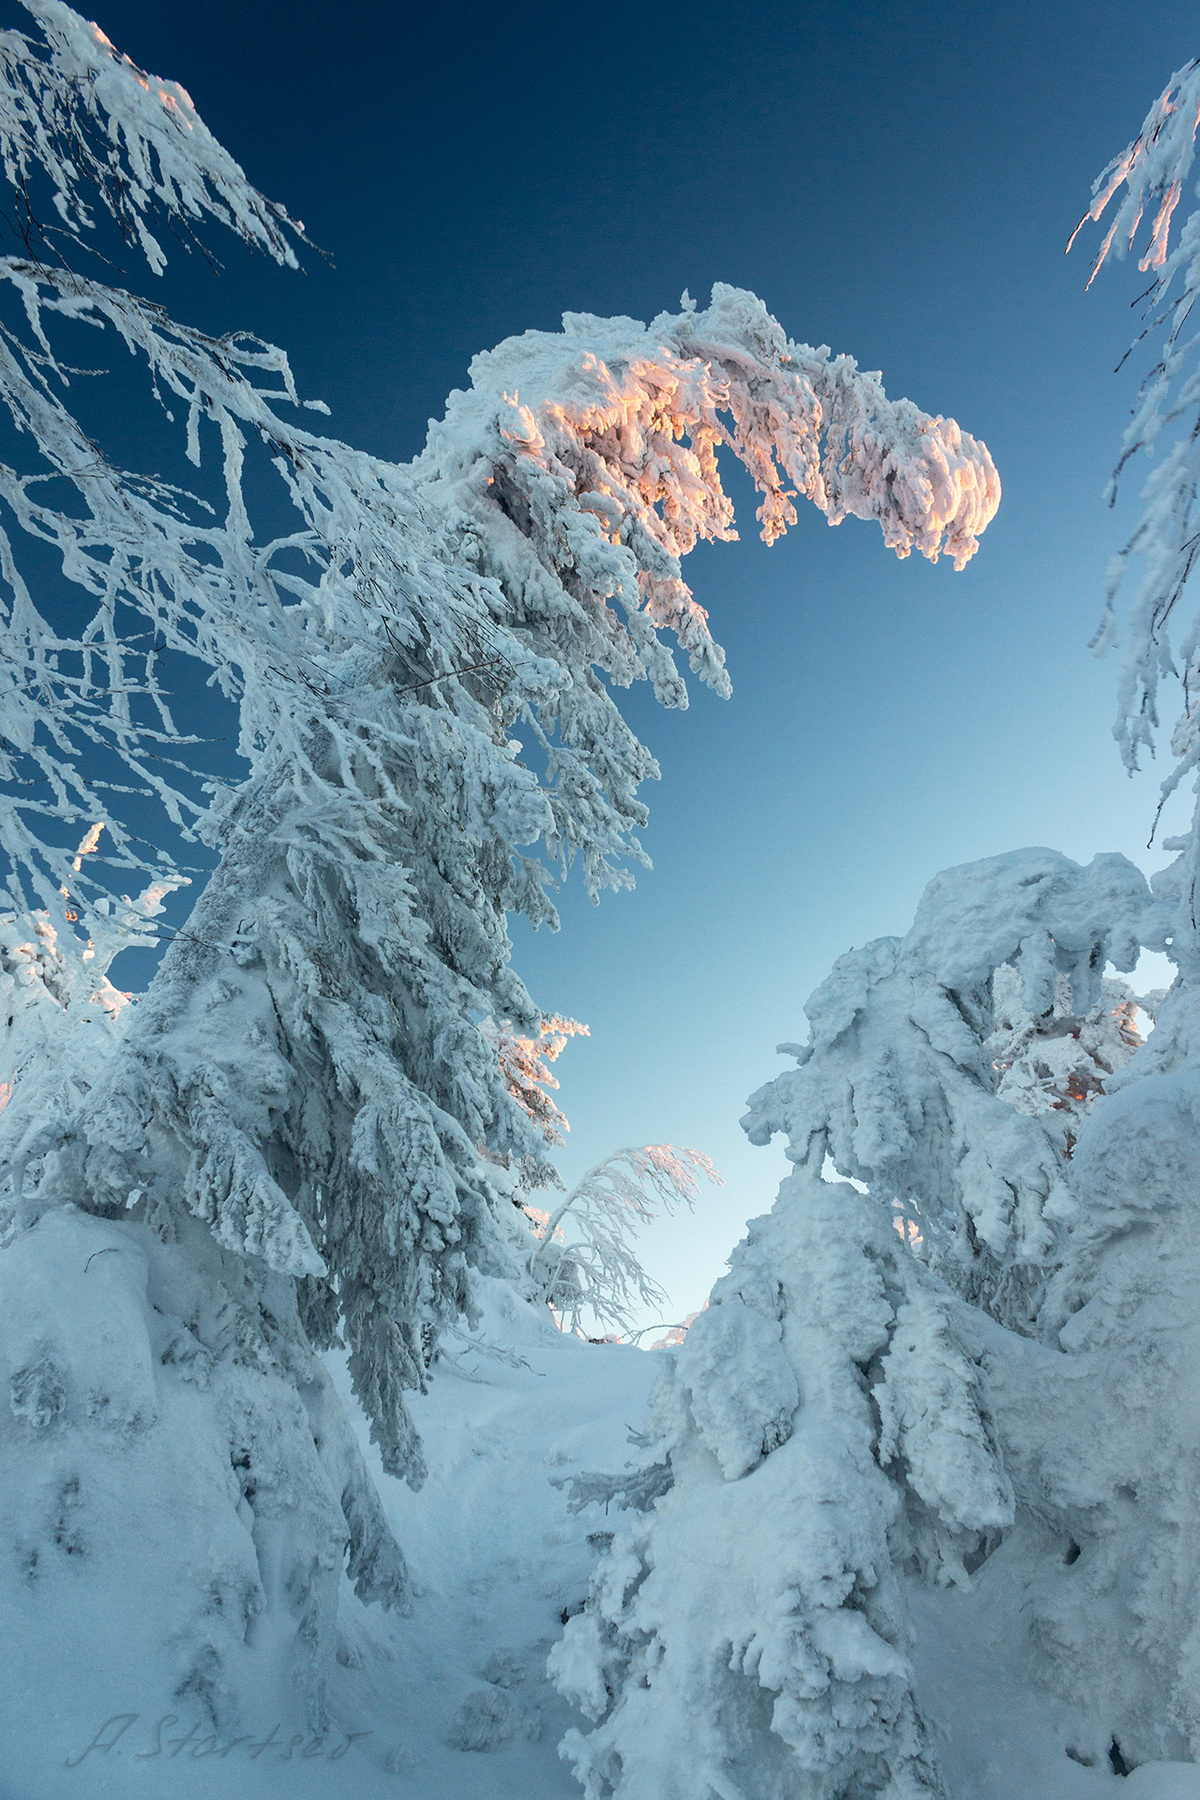 Поклон утро Урал туризм снег рассвет природа Пермский_край пейзаж зима гора дерево